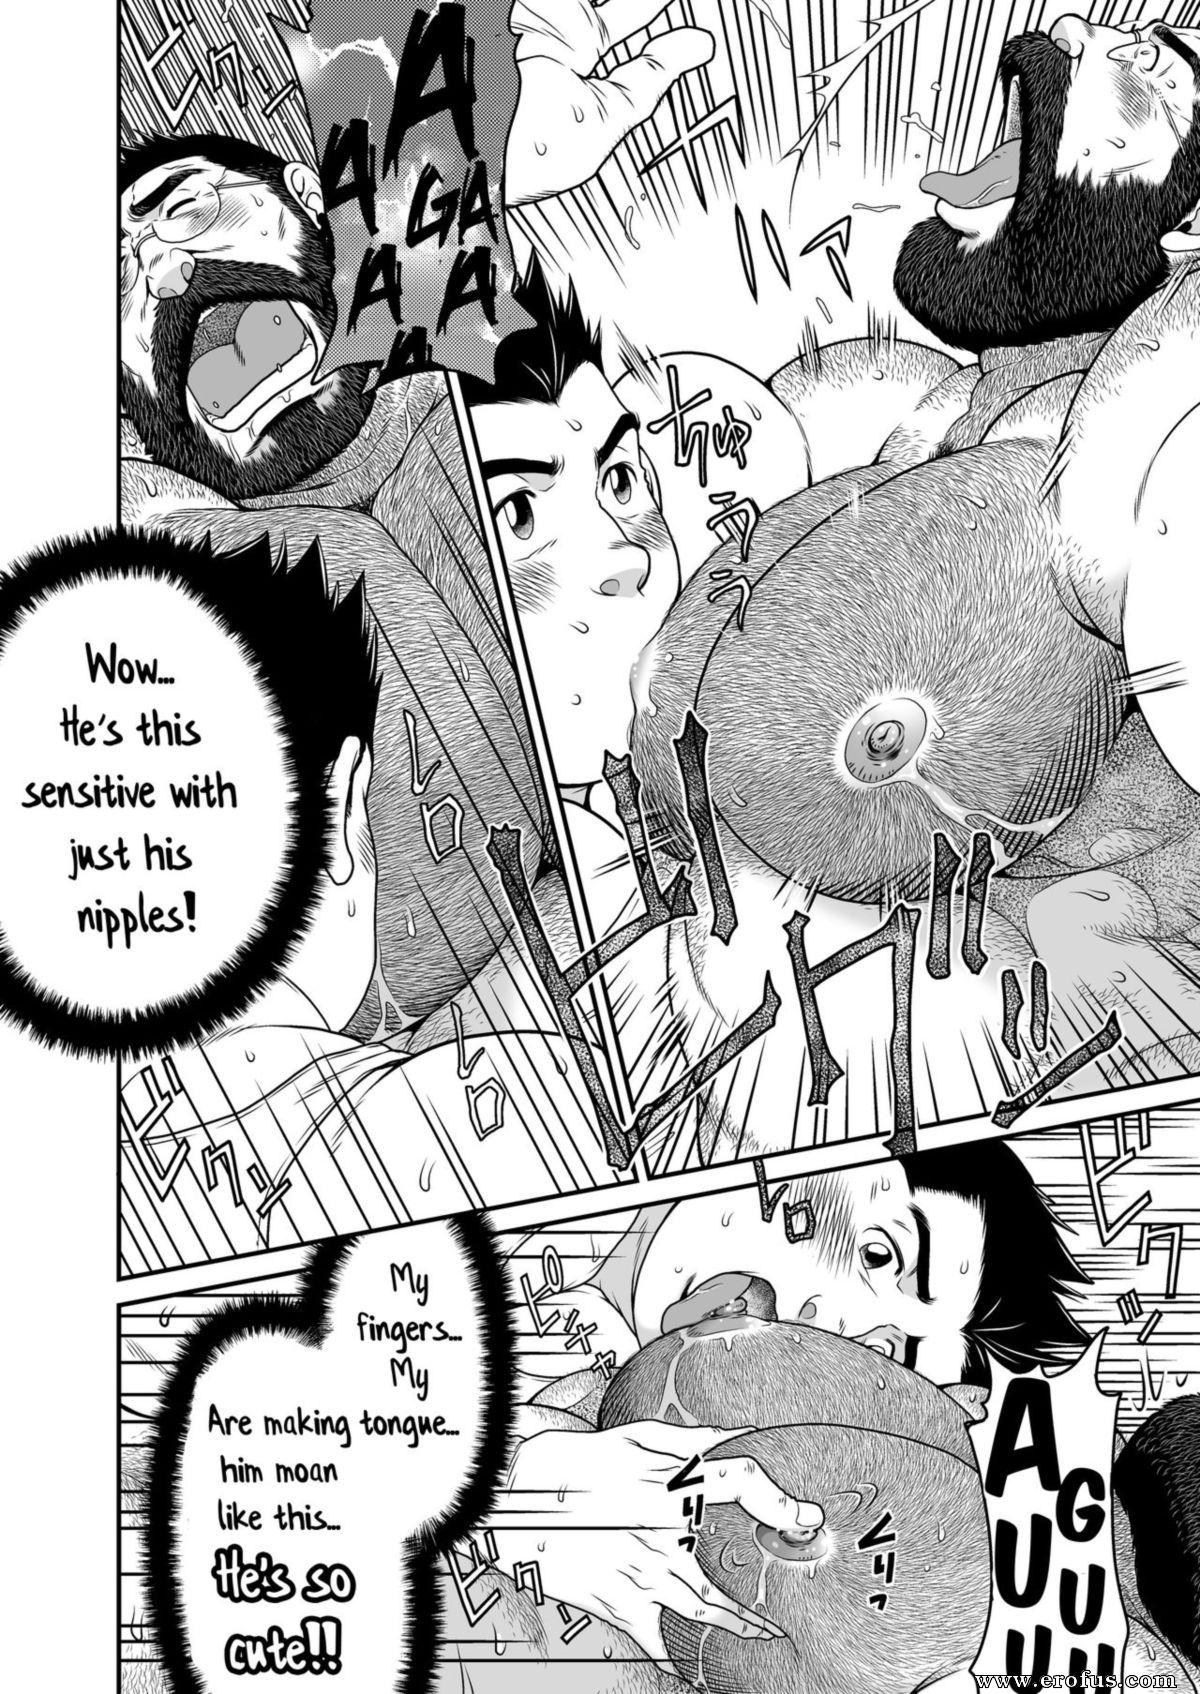 Manga gay sex bear